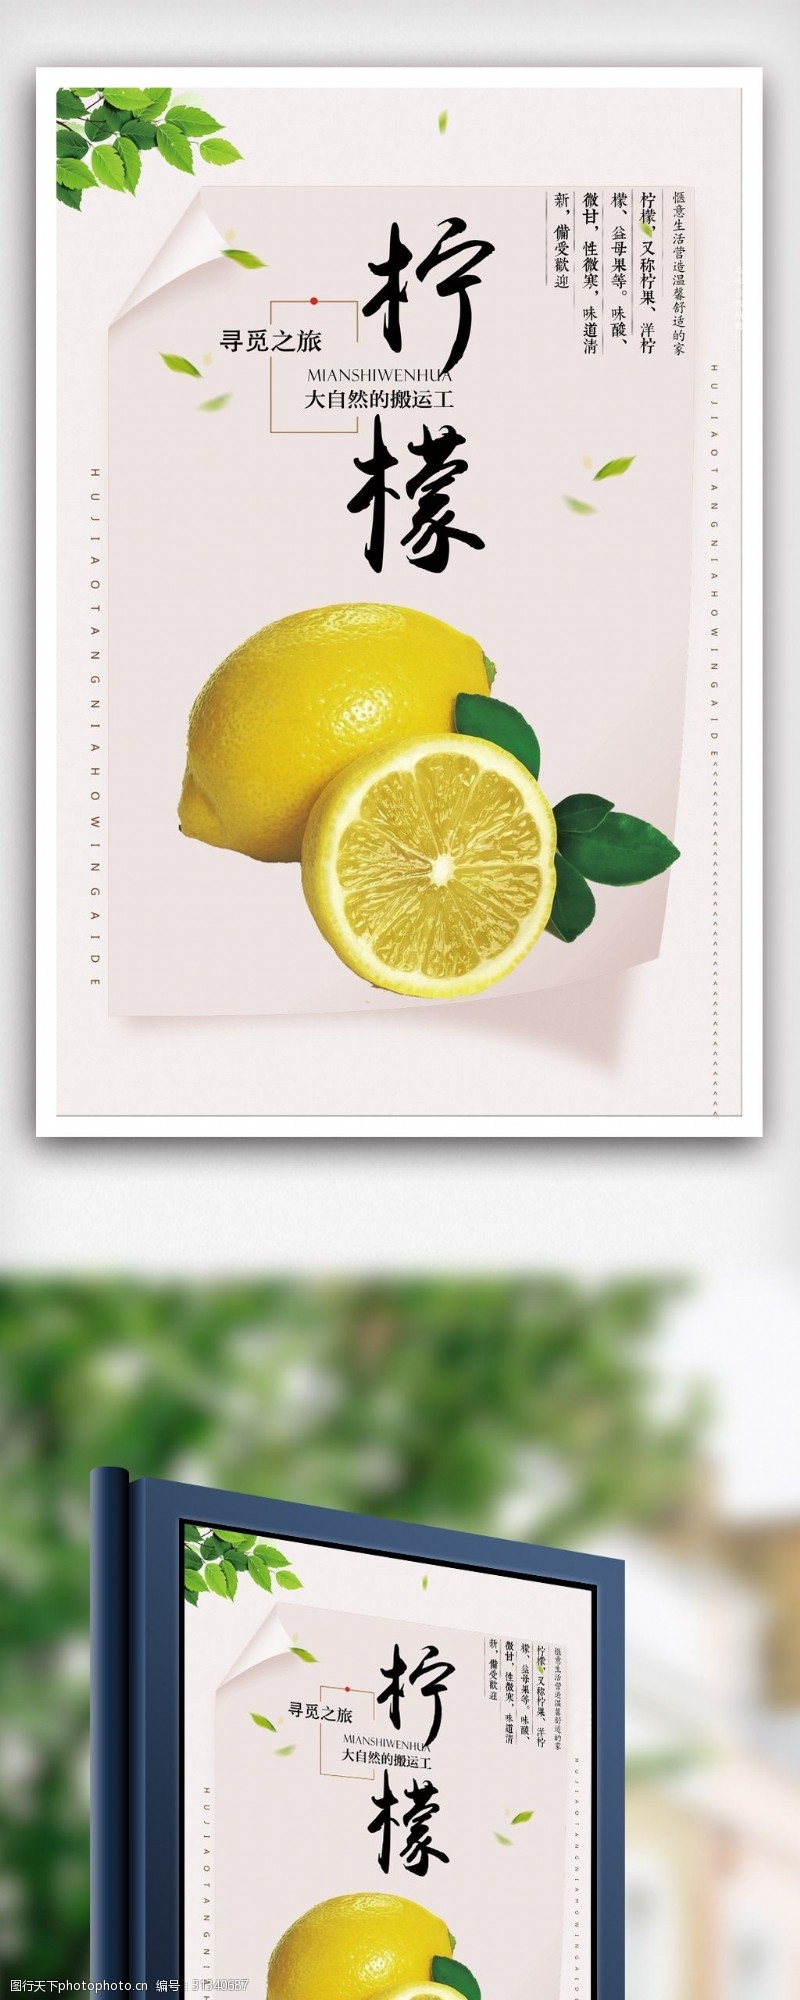 桔子新鲜水果柠檬海报模版psd